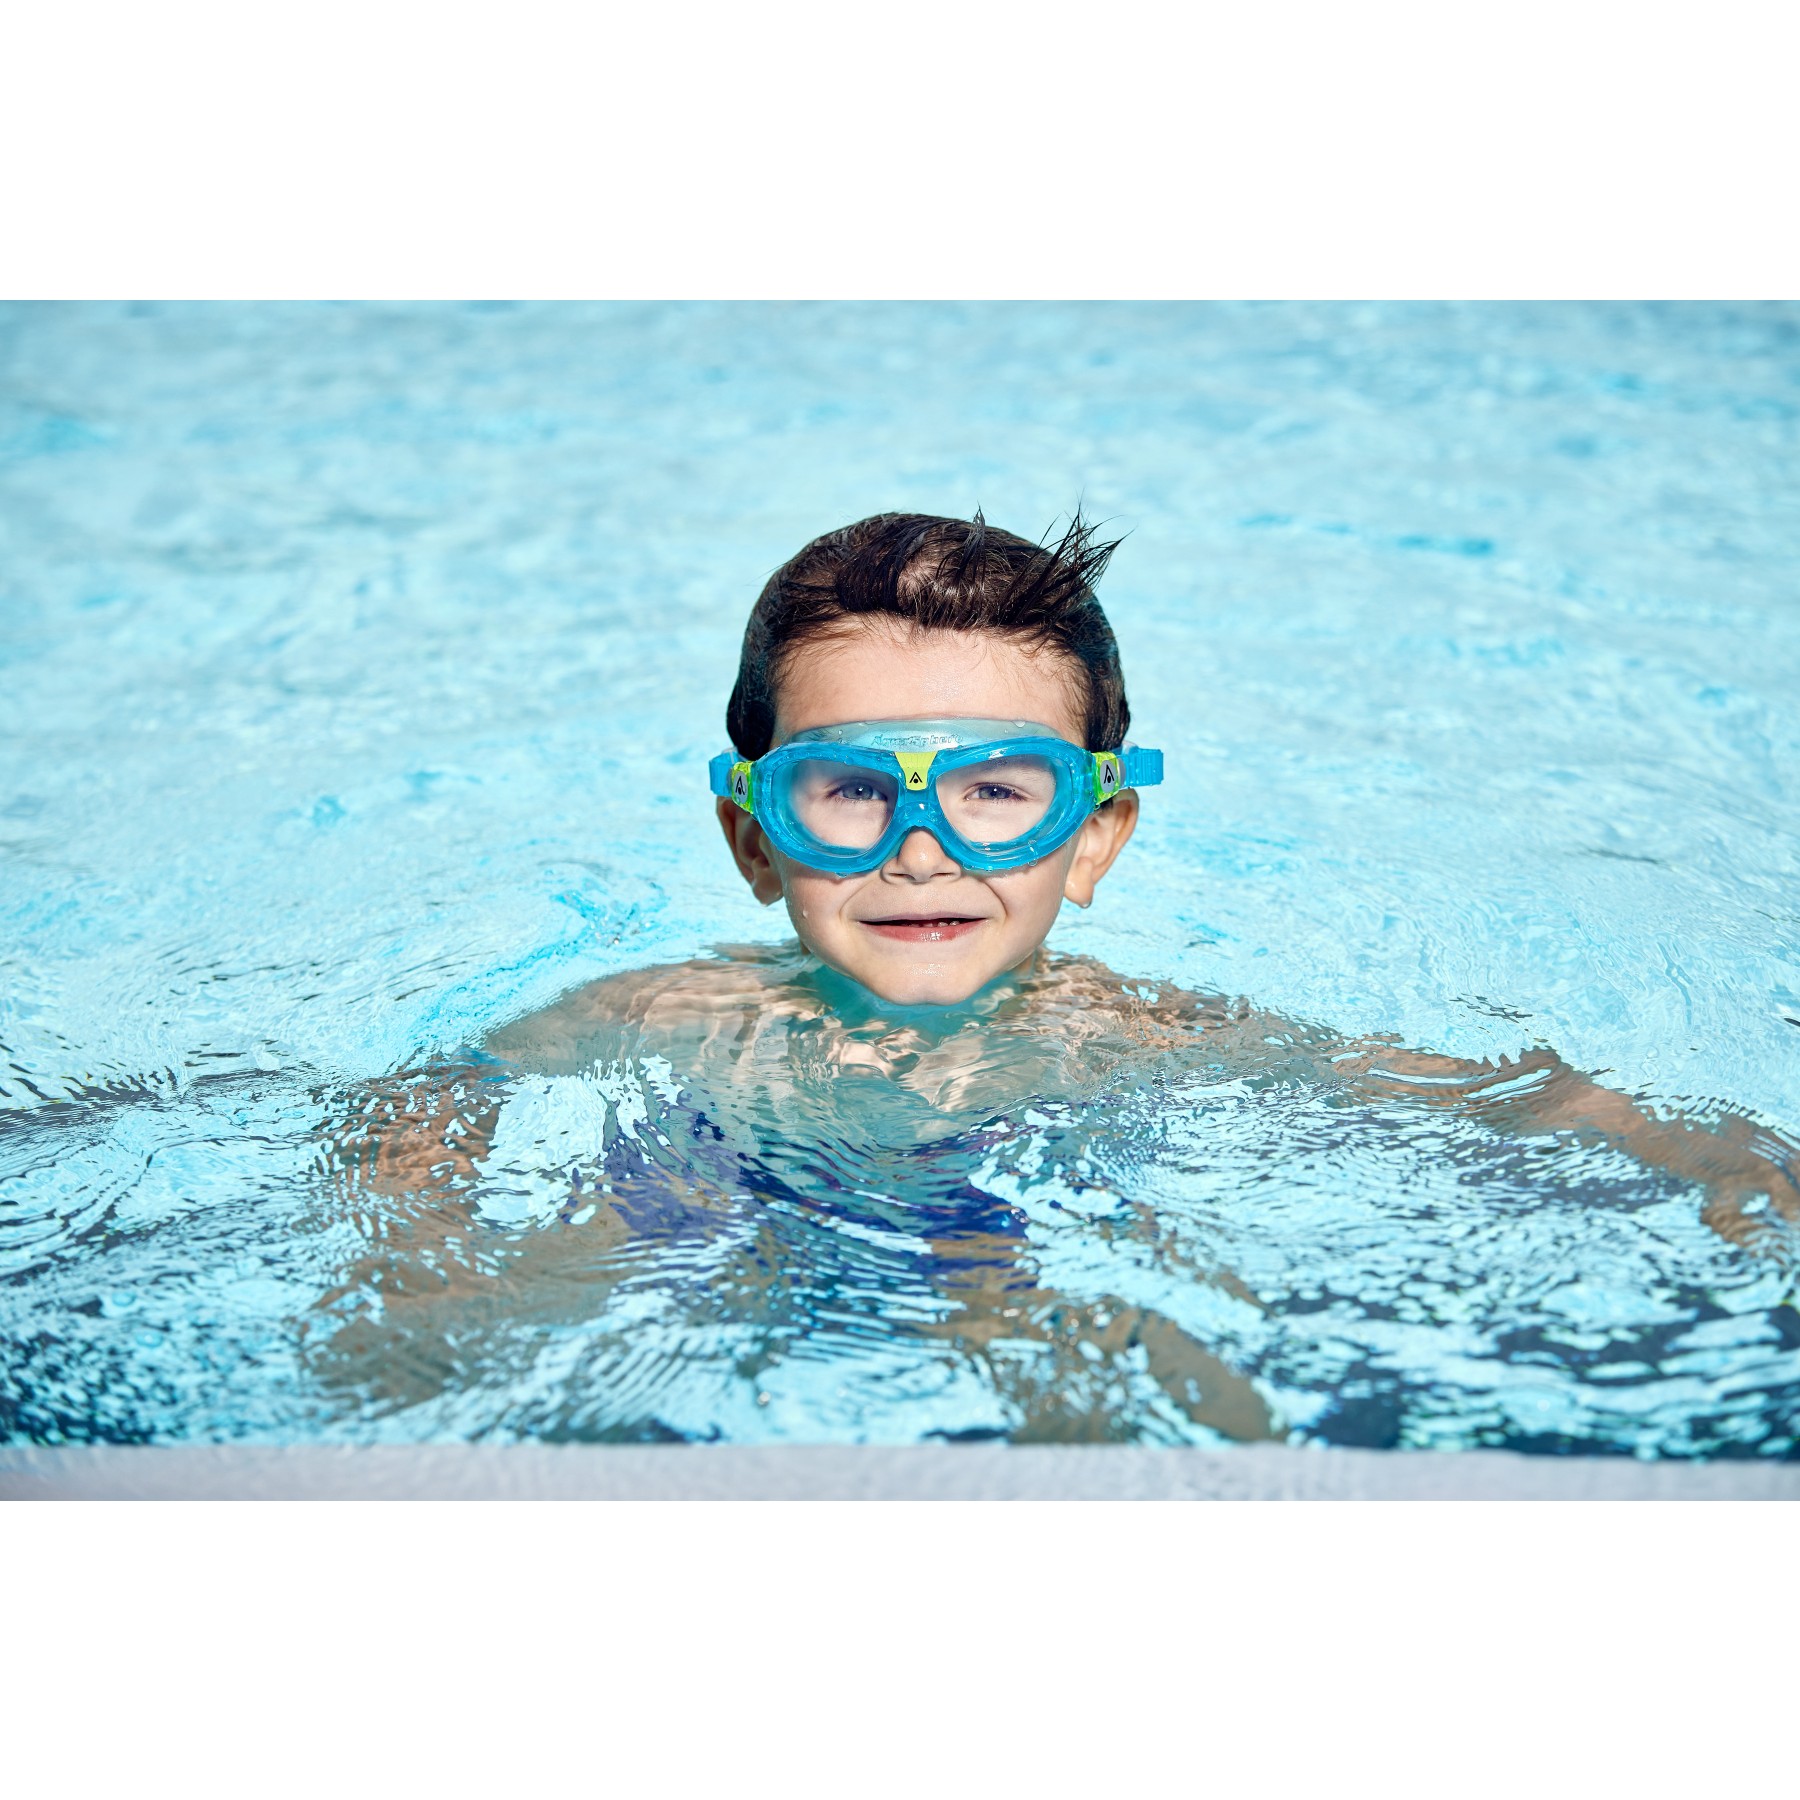 Gafas natación niños